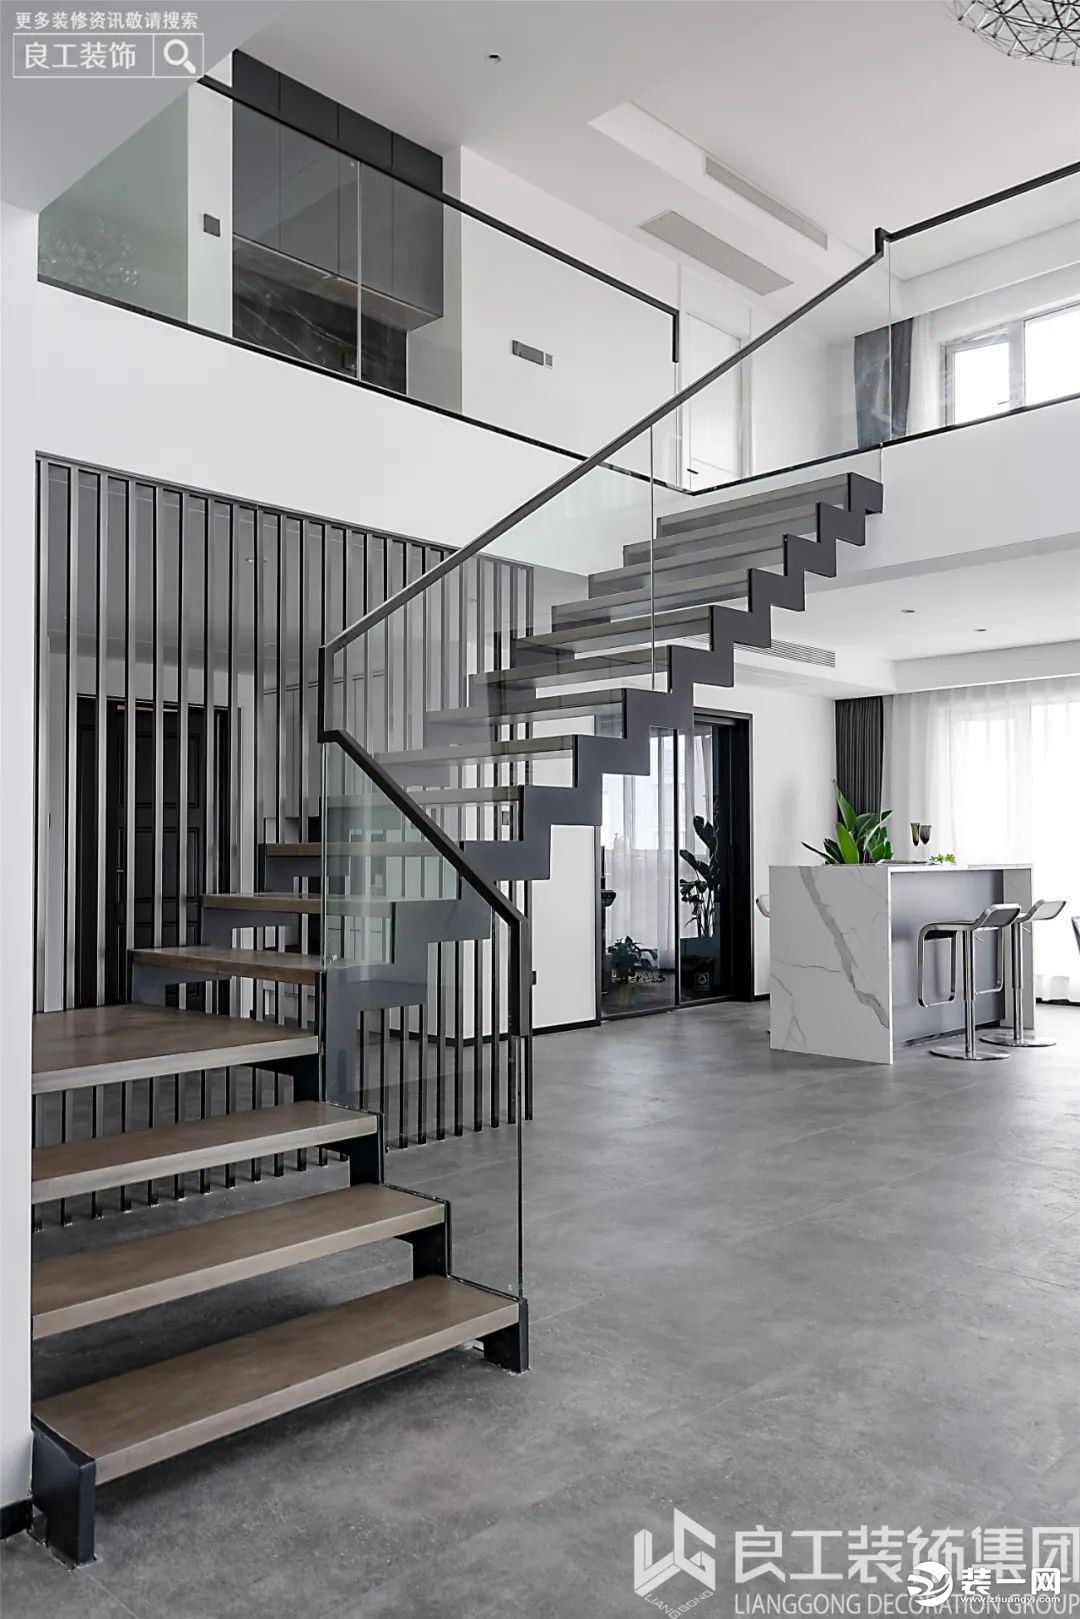 黑色的楼梯线条也让现代极简在此得到了很好的诠释